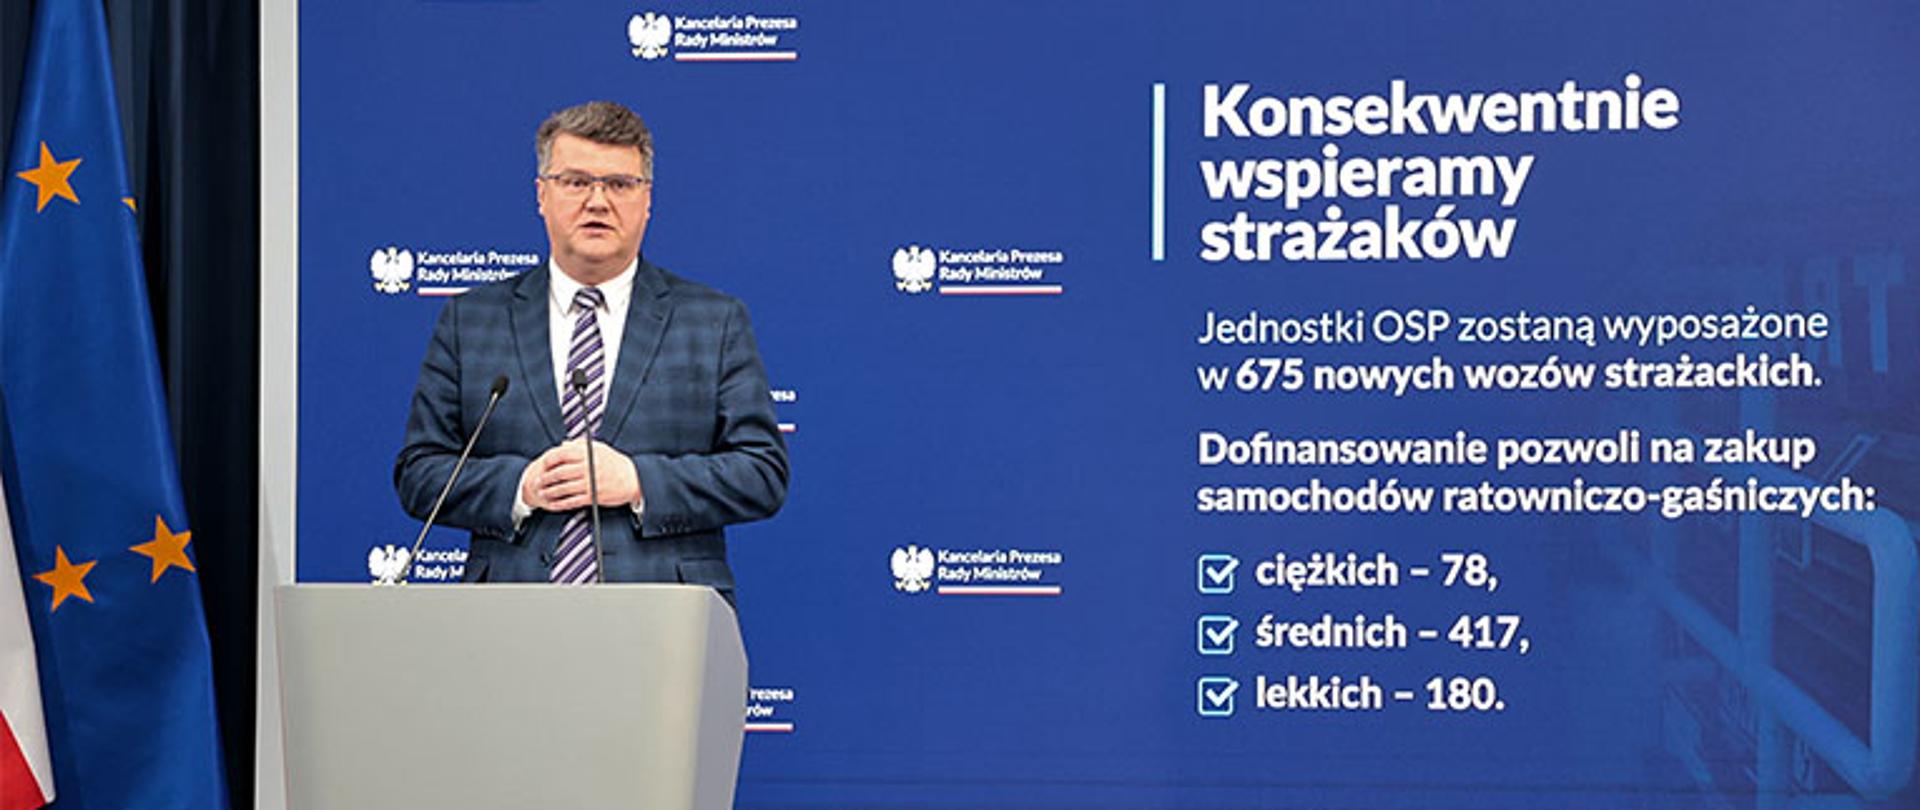 minister Wąsik przemawia z trybuny w tle duży baner z kancelarii prezesa rady ministrów po lewej stronie flaga unii europejskiej